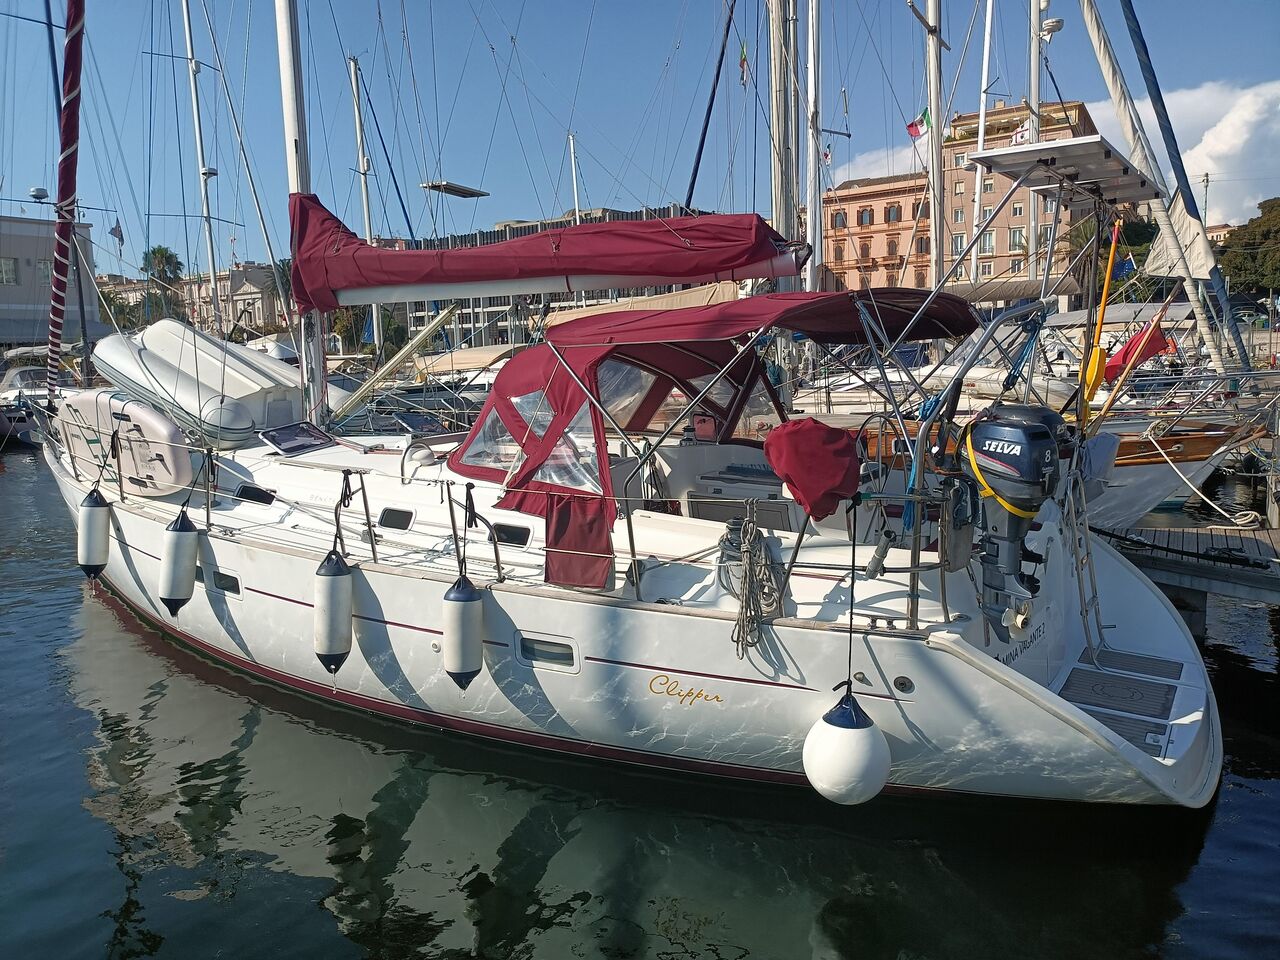 Bénéteau Océanis 411 Clipper (sailboat) for sale